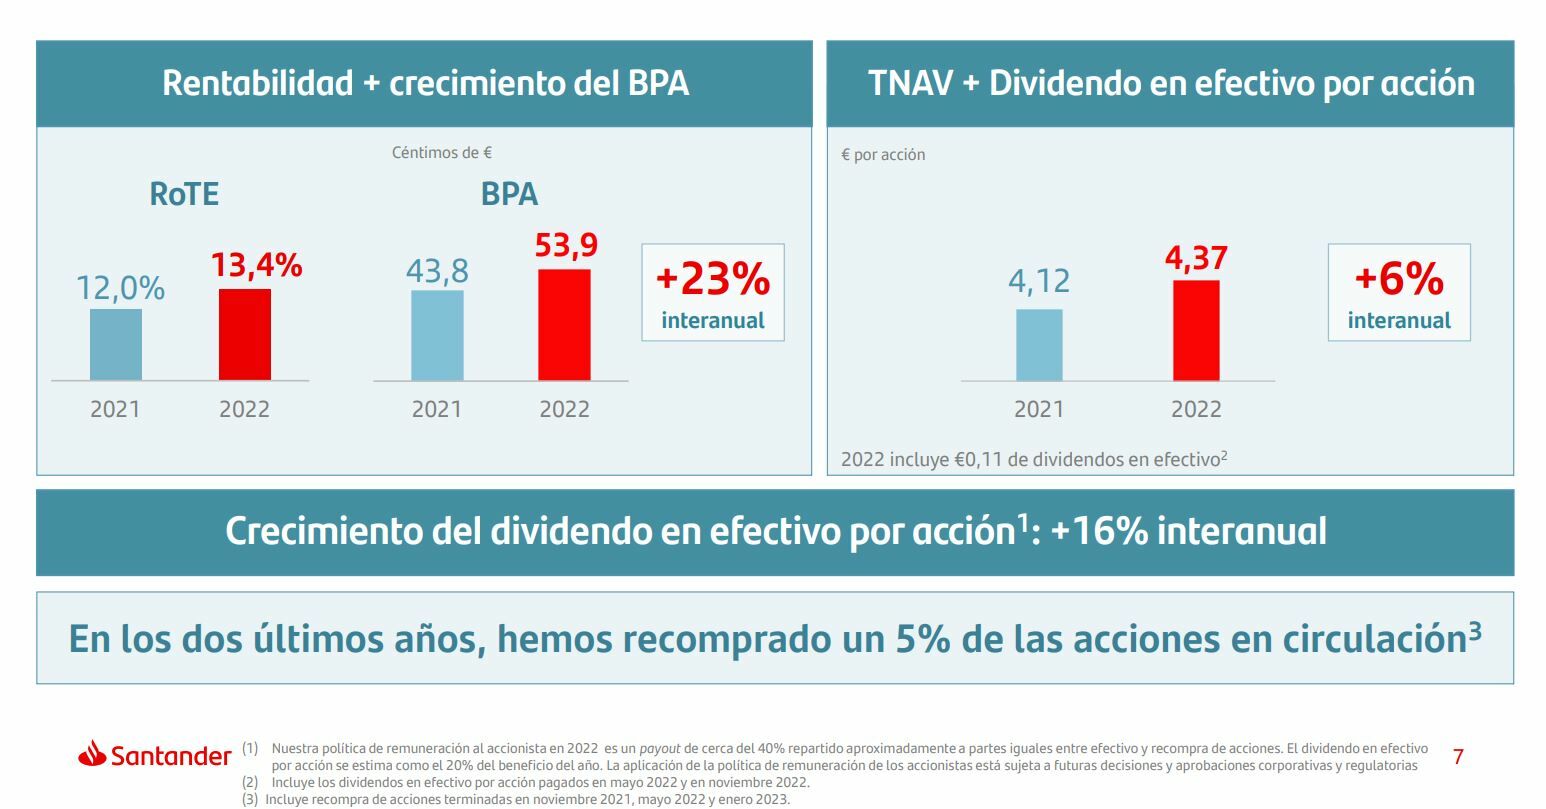 Banco Santander detalles sobre su dividendo